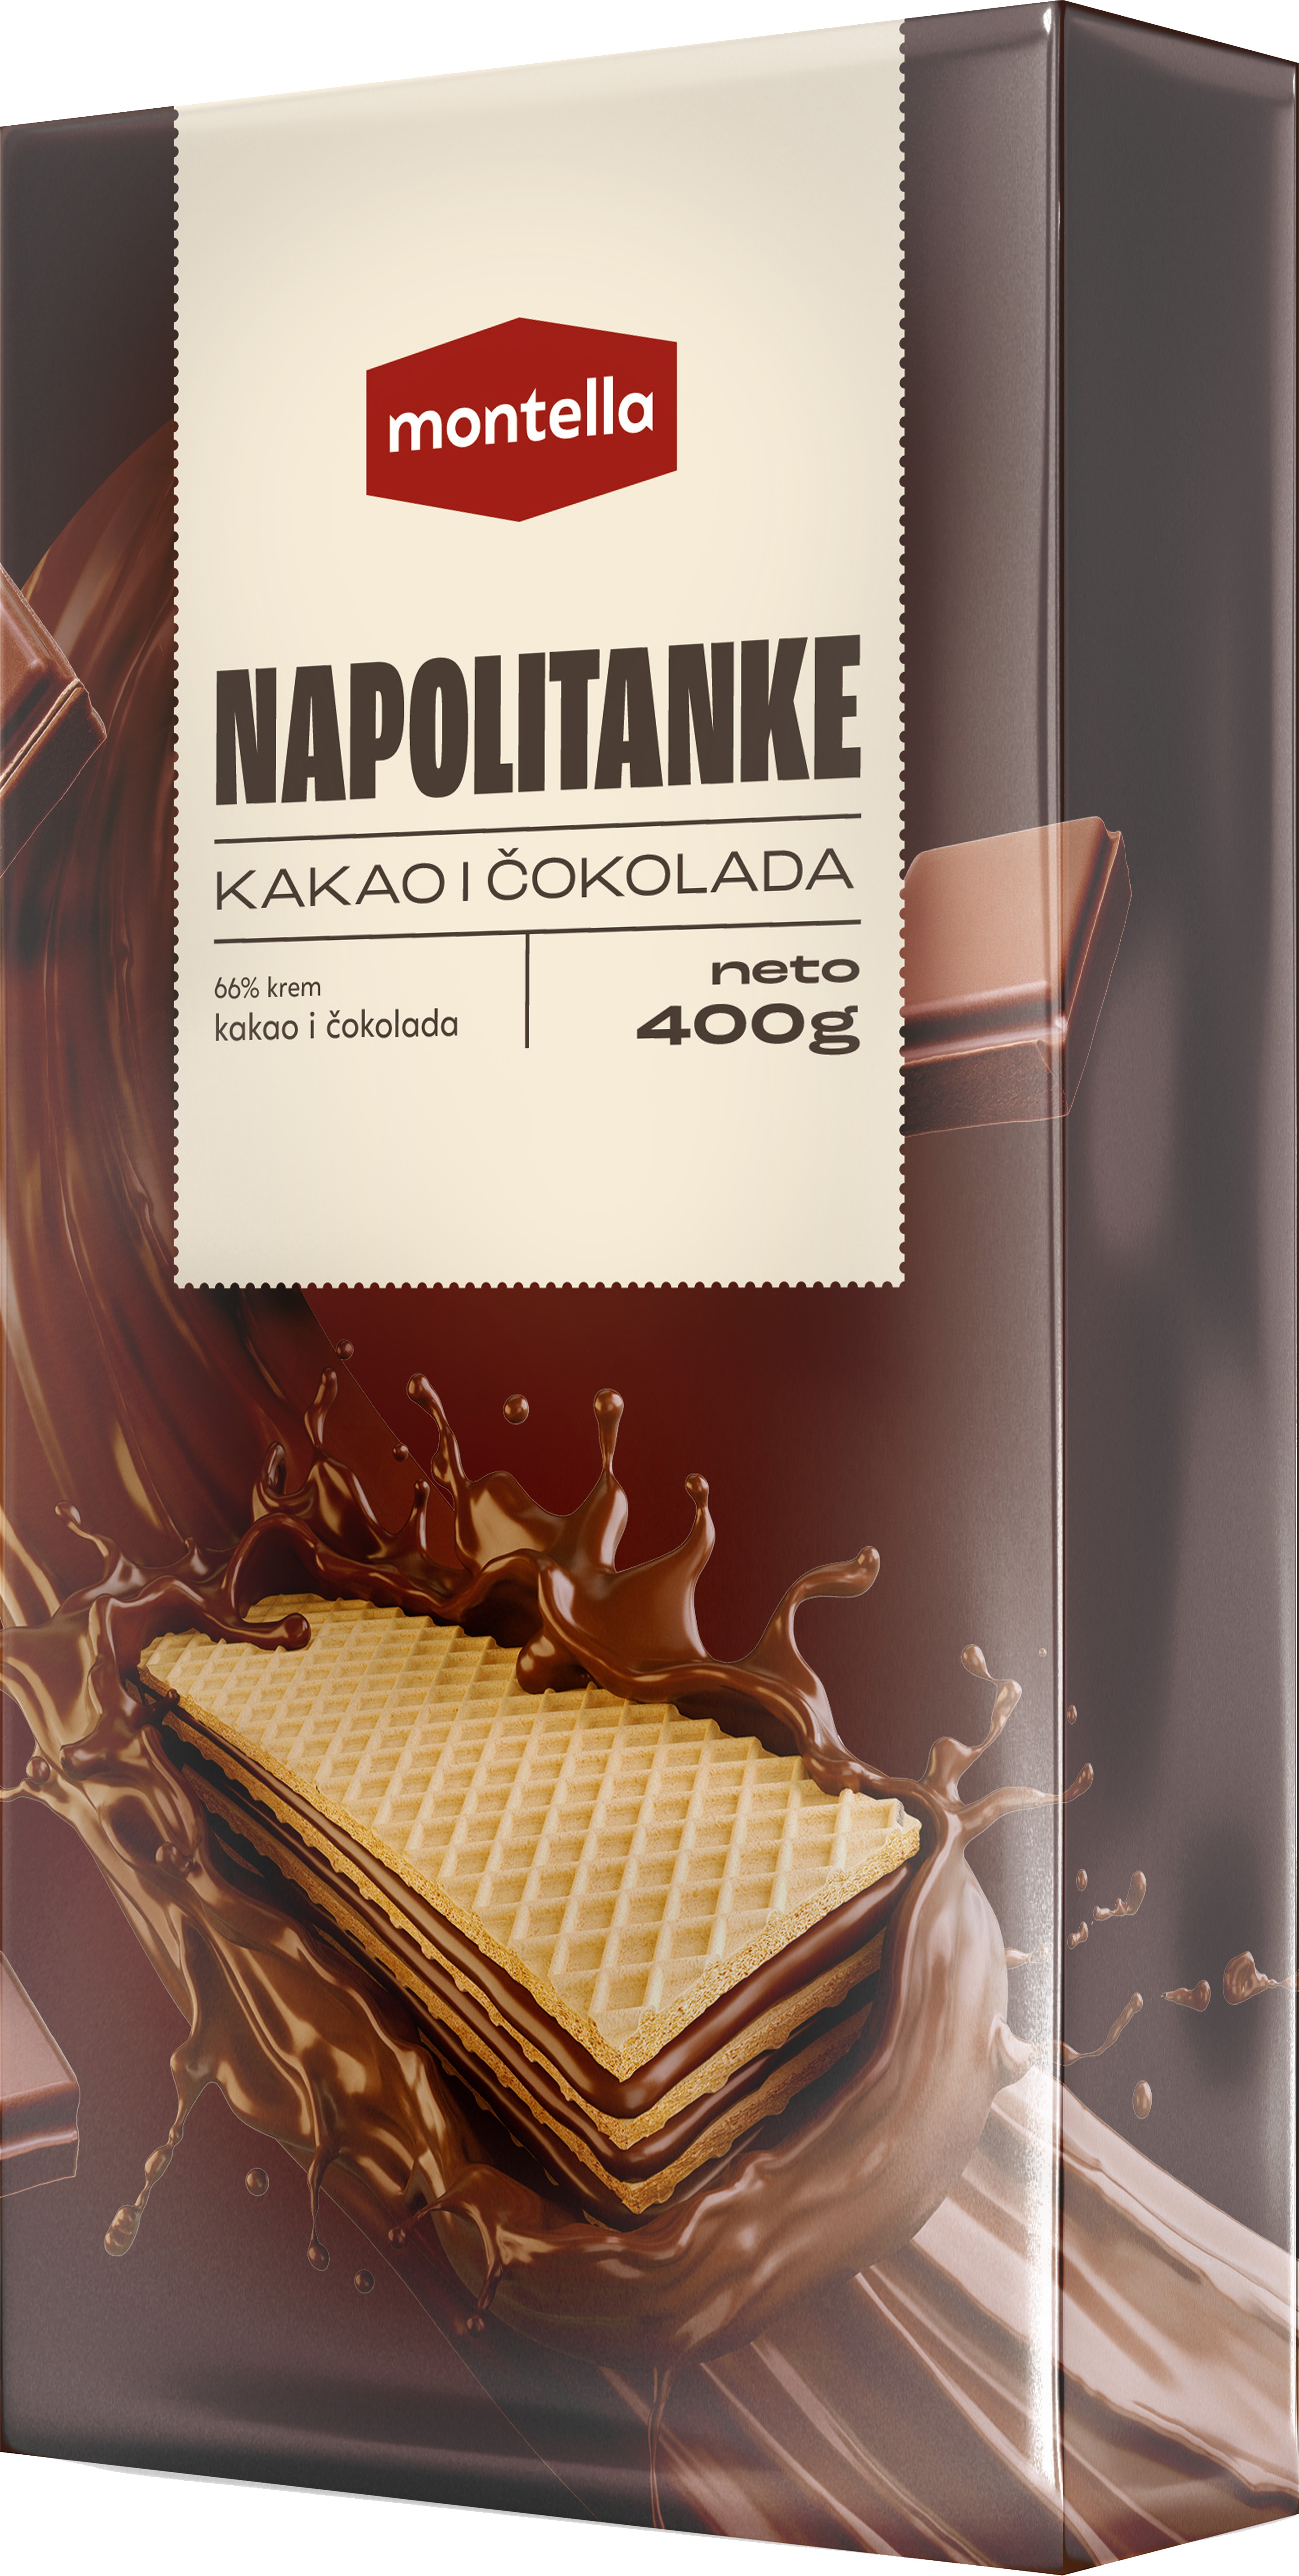 Slika za Napolitanka Montella čokolada 400g